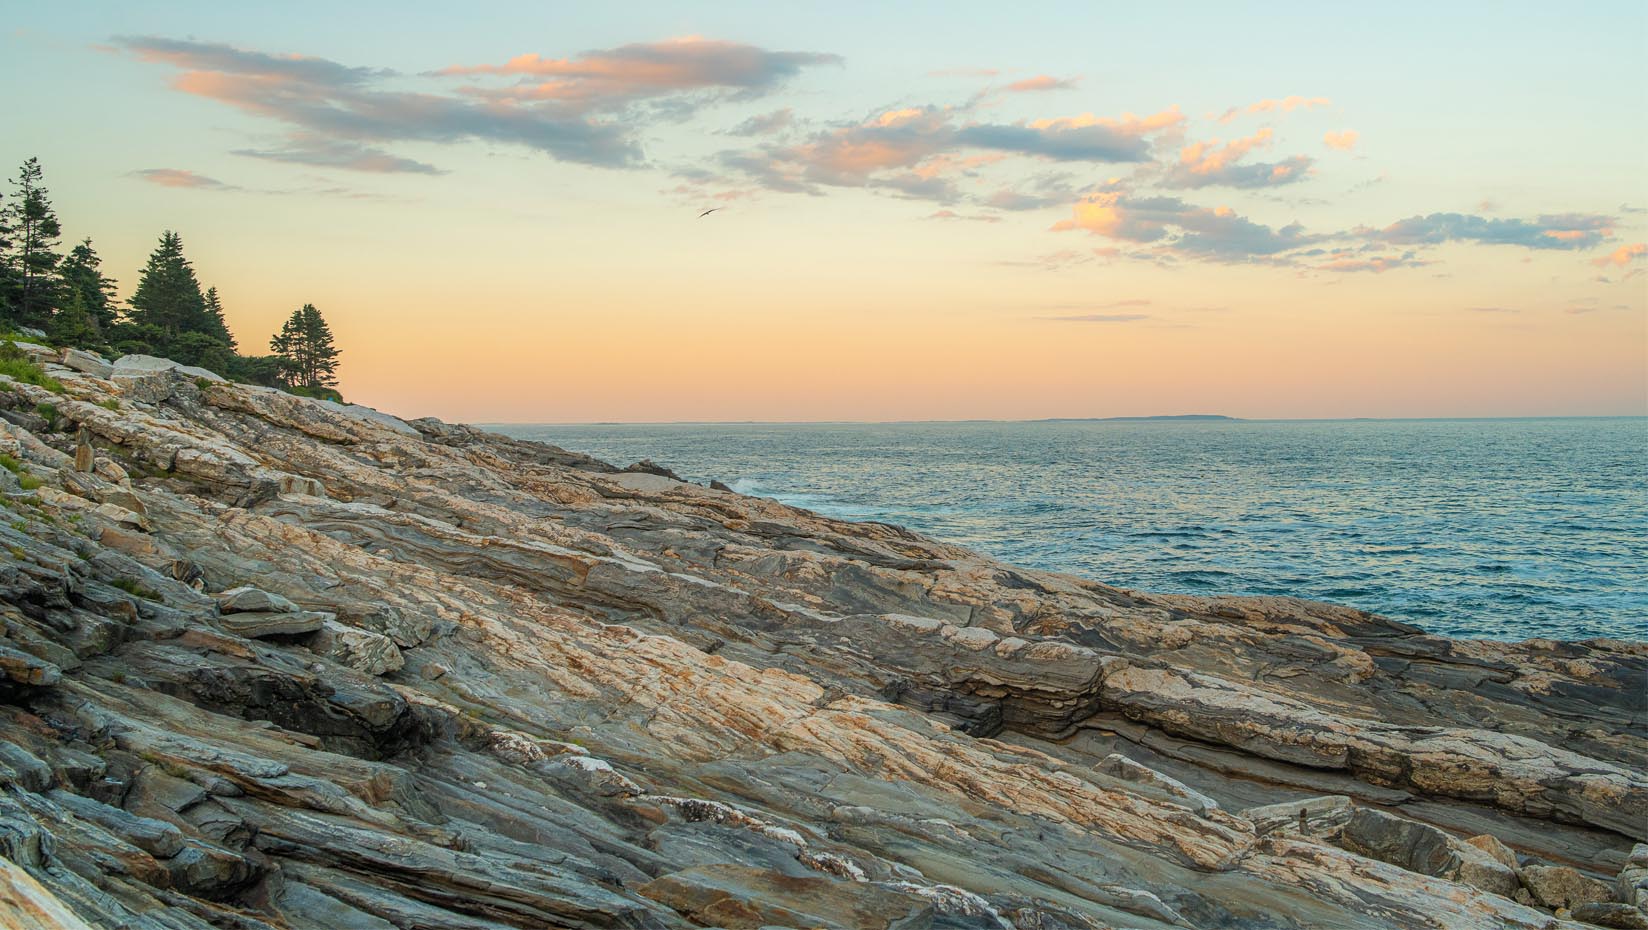 A photo of the rocky Maine coast